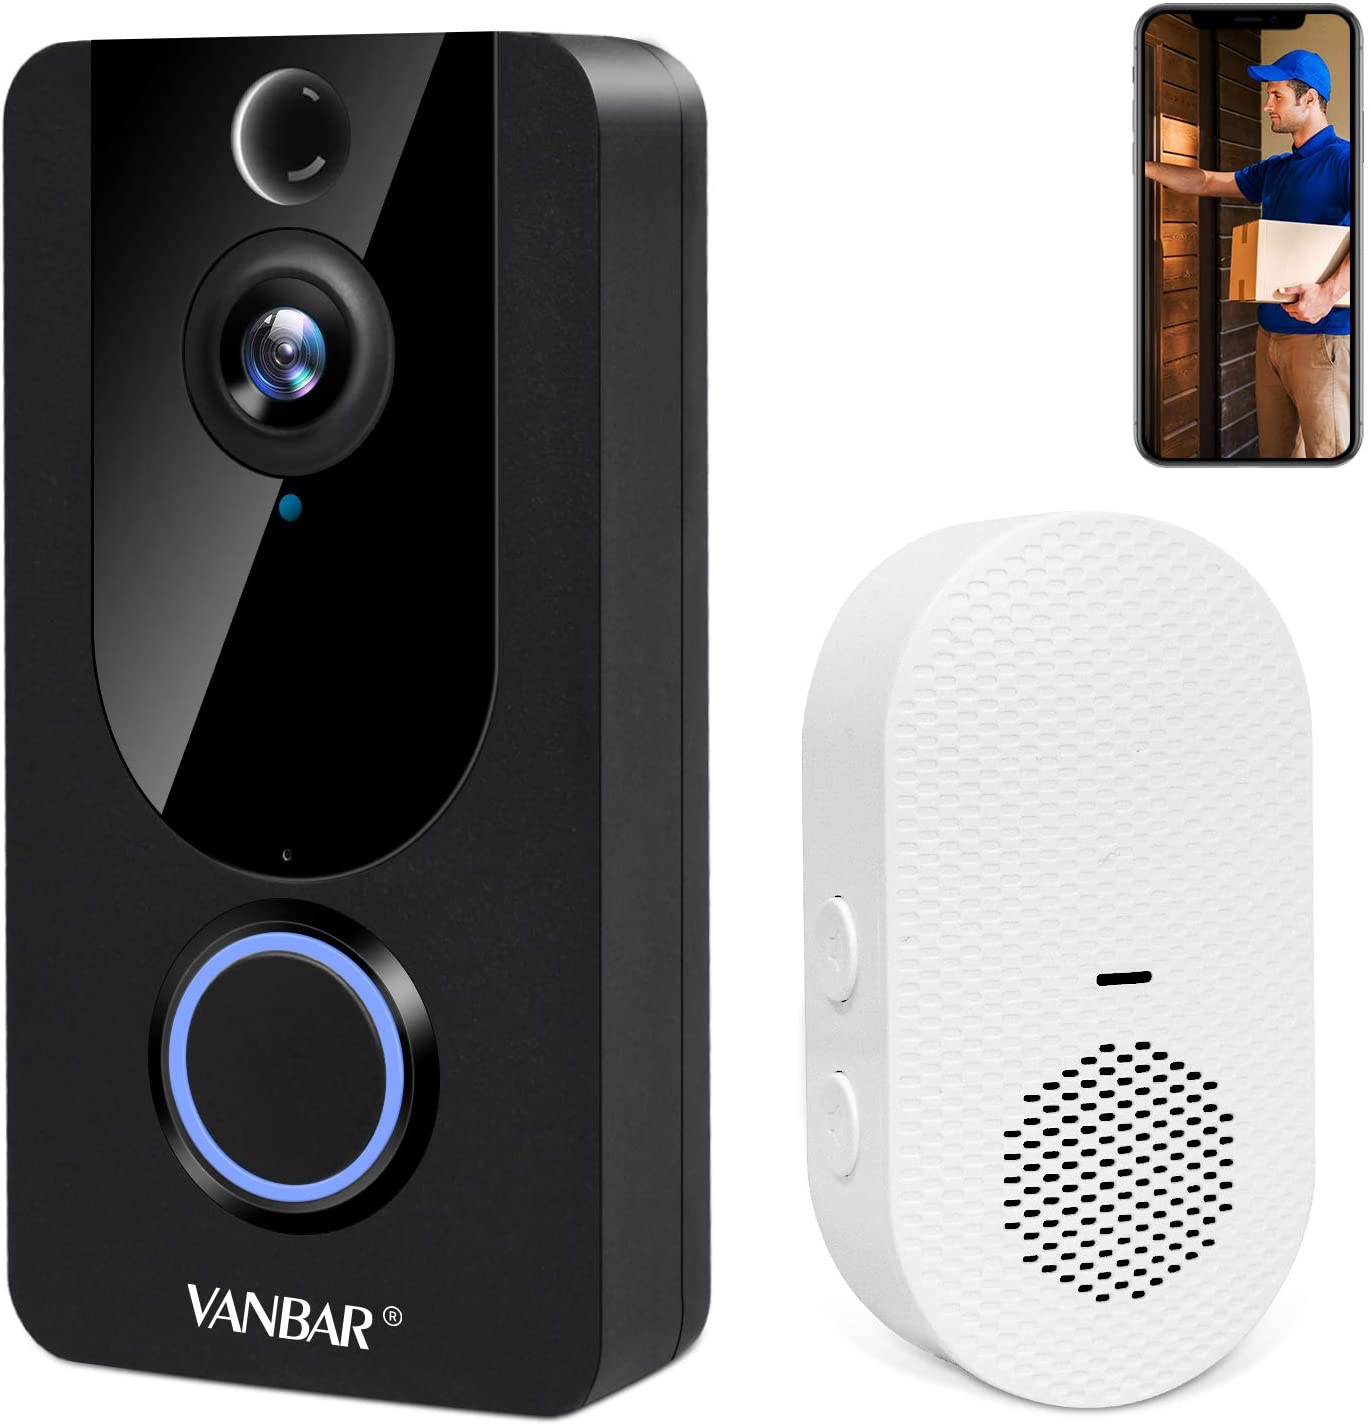 VANBAR Wireless Doorbell